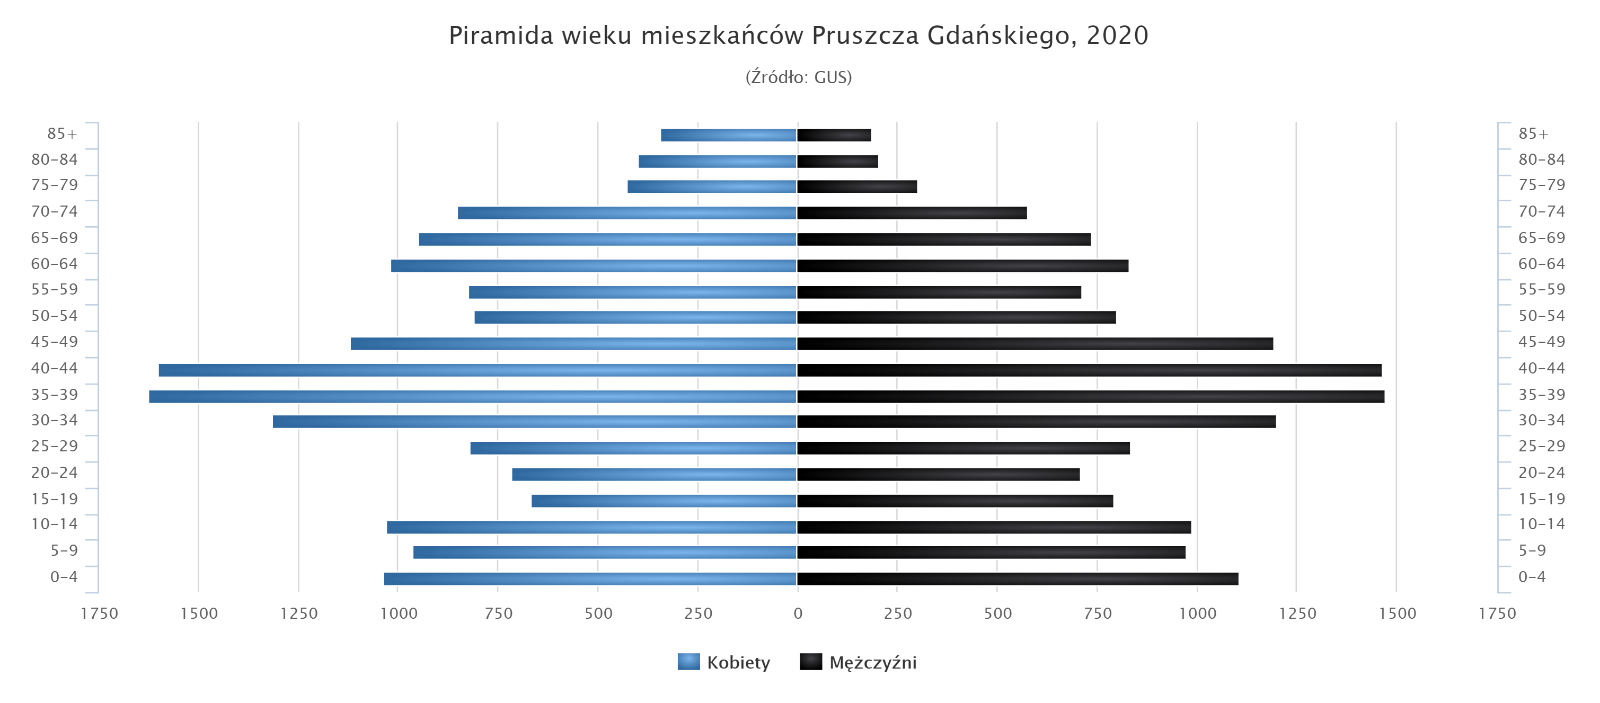 Wykres pokazujący strukturę wieku mieszkańców miasta Pruszcz Gdański, dane pochodzą z 2020 r.